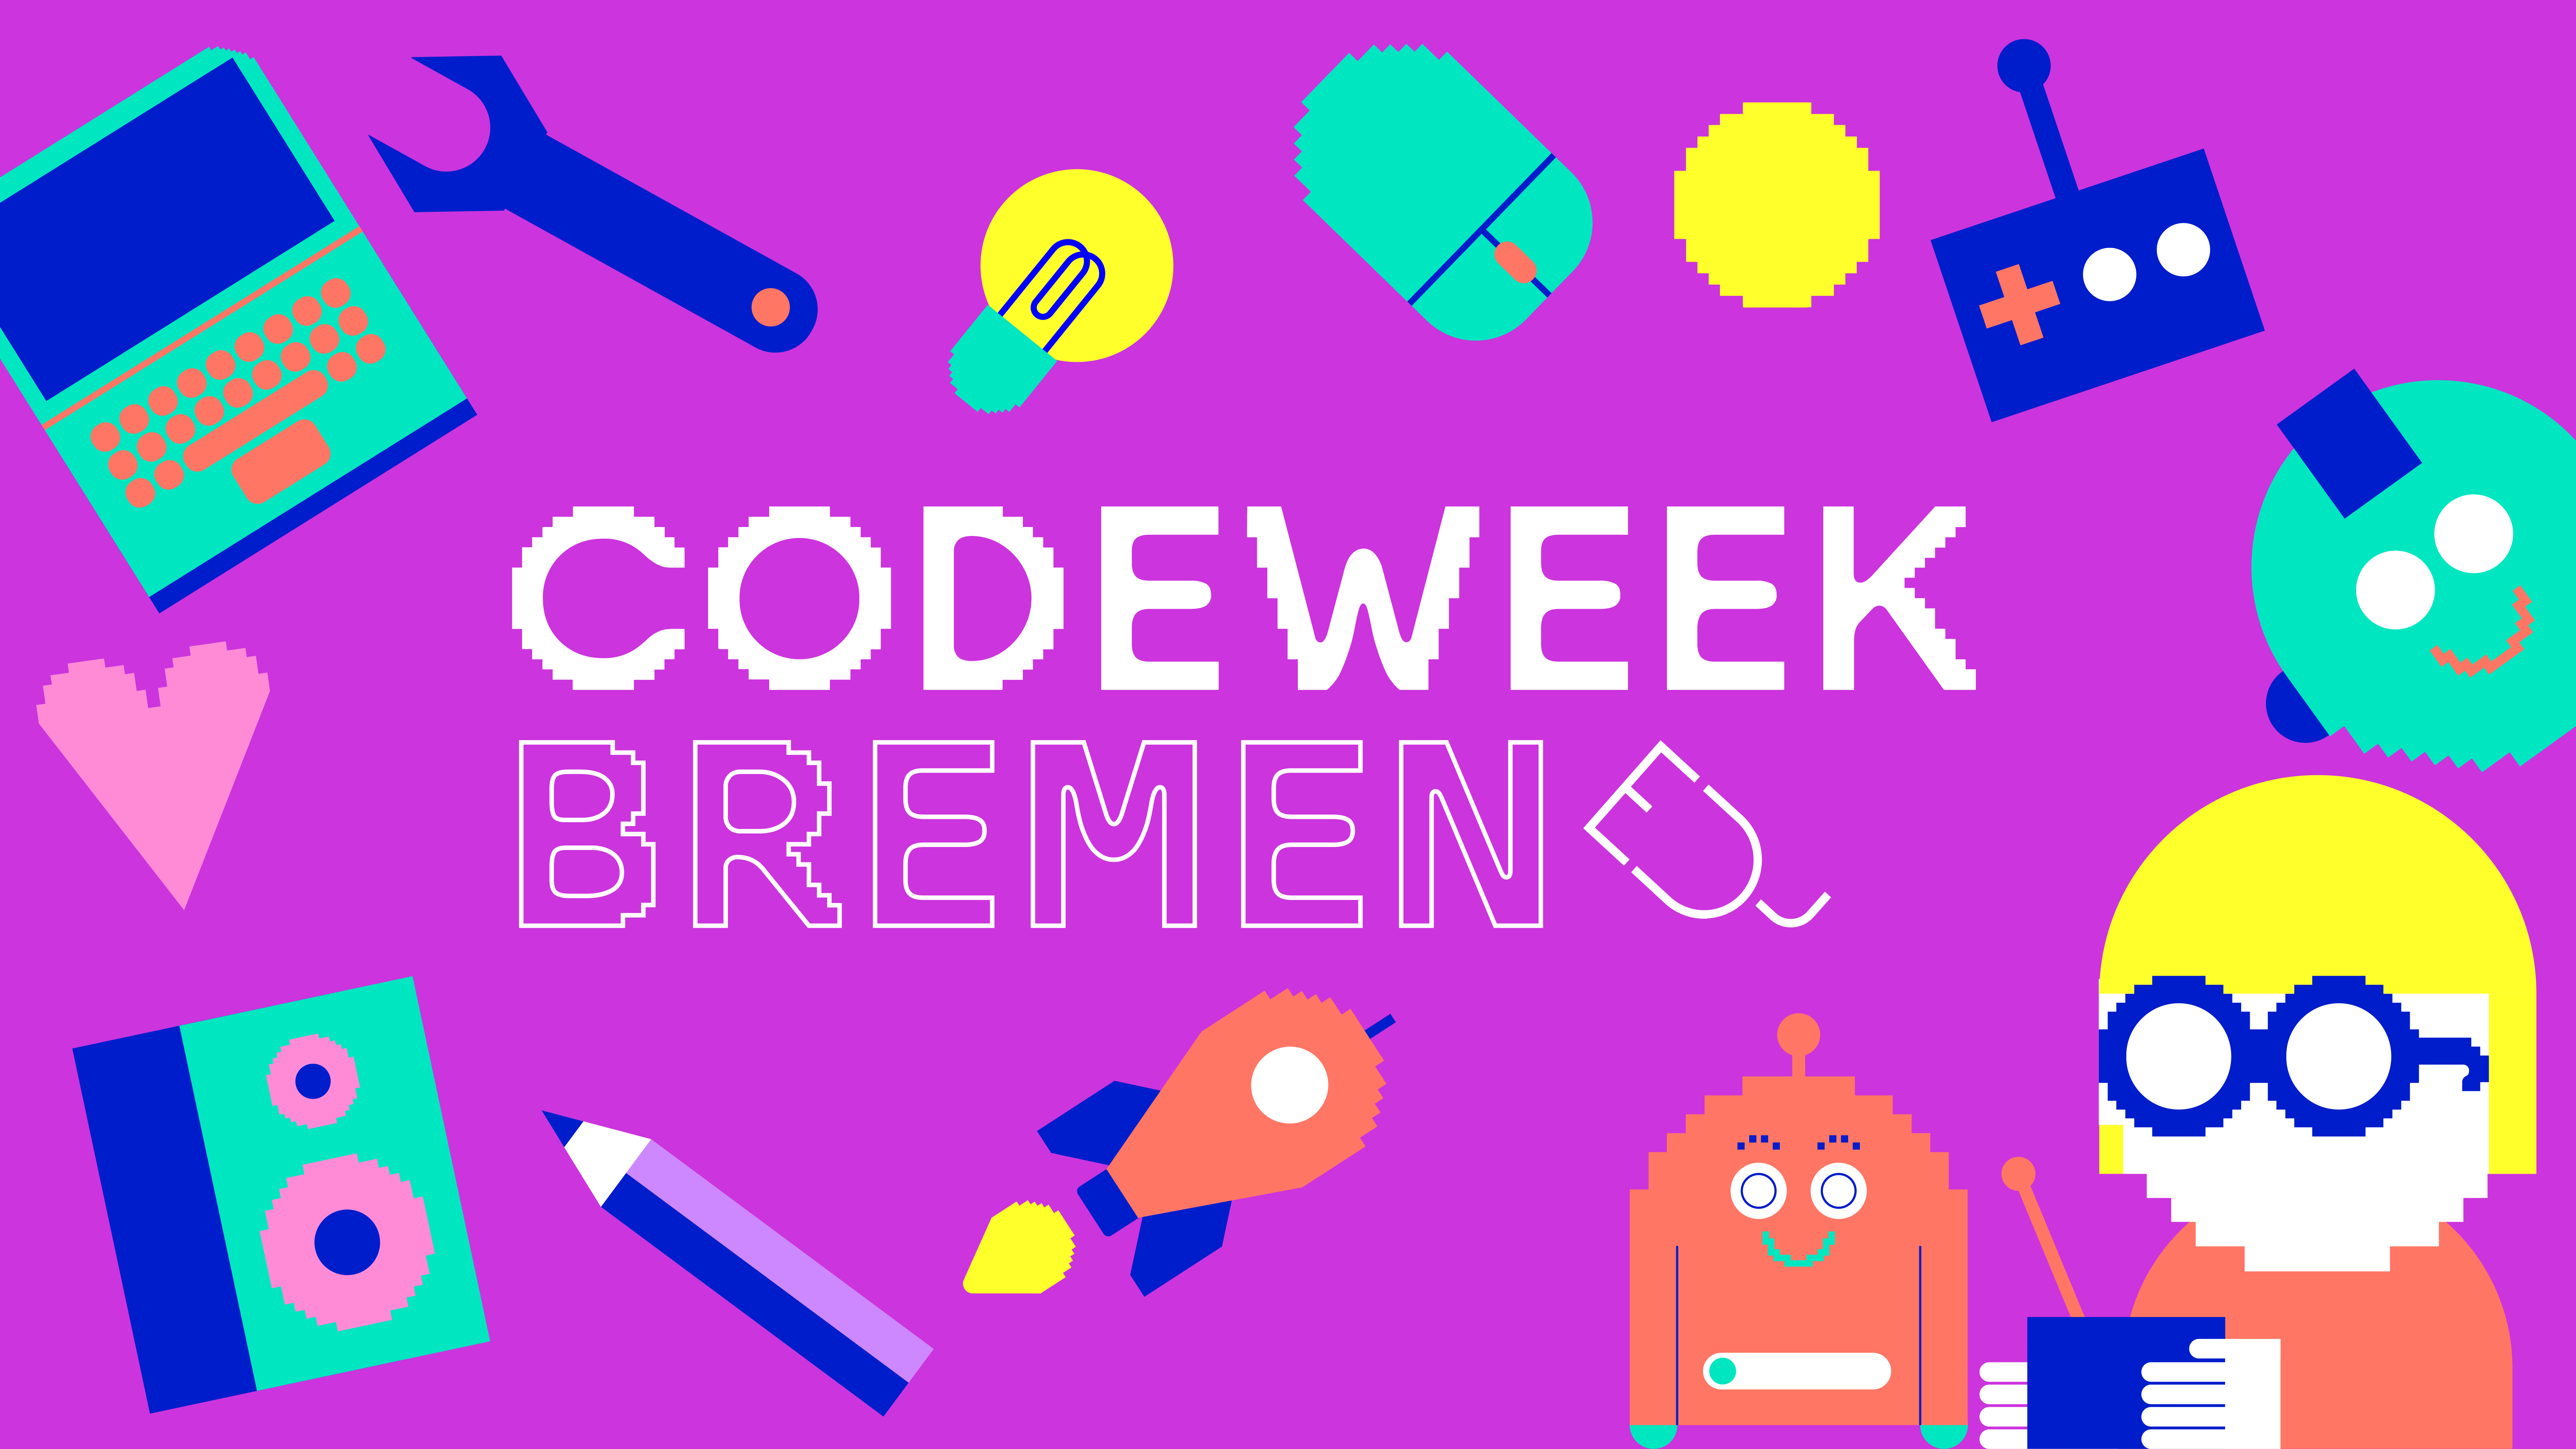 Das Logo der CodeWeek Bremen zeigt Icons mit Computern, Tastaturen, Robotern.